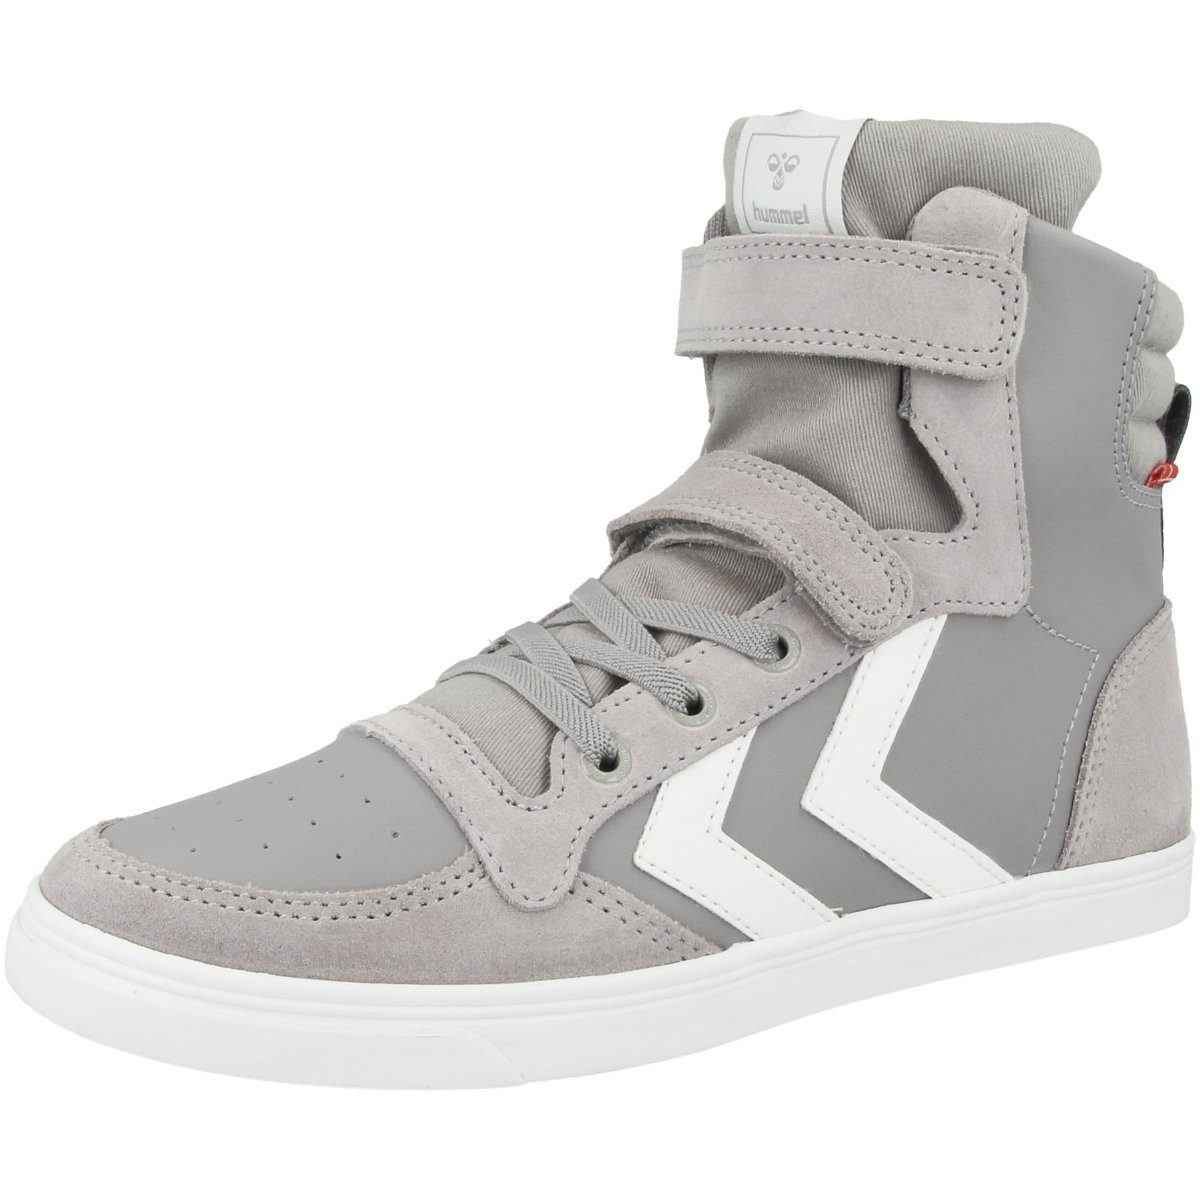 keine Unisex JR Kinder hummel Sneaker Leather Stadil Merkmale Slimmer grau besonderen High